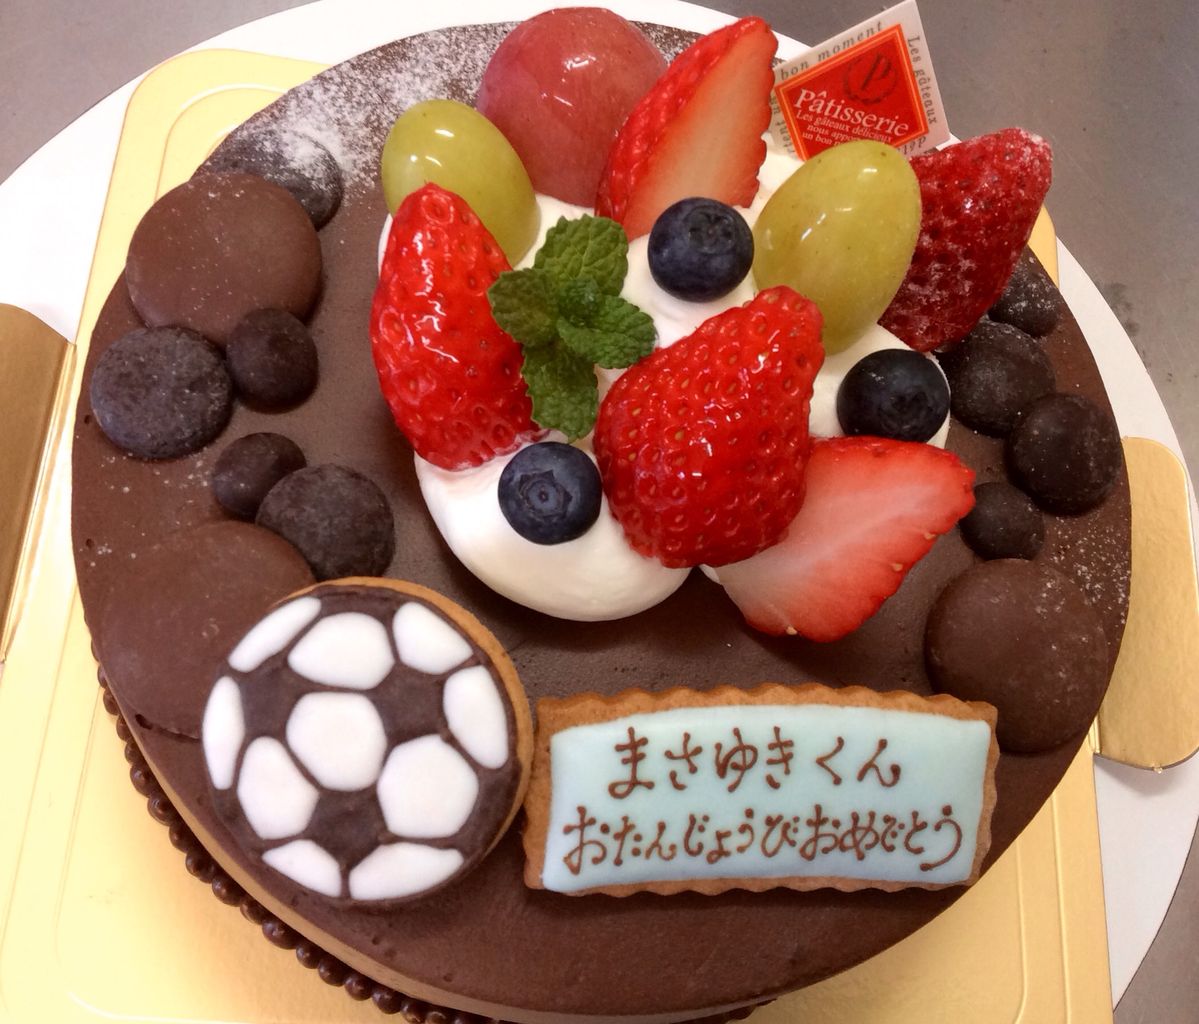 サッカーボールのクッキーをのせたチョコレートケーキ Rina S